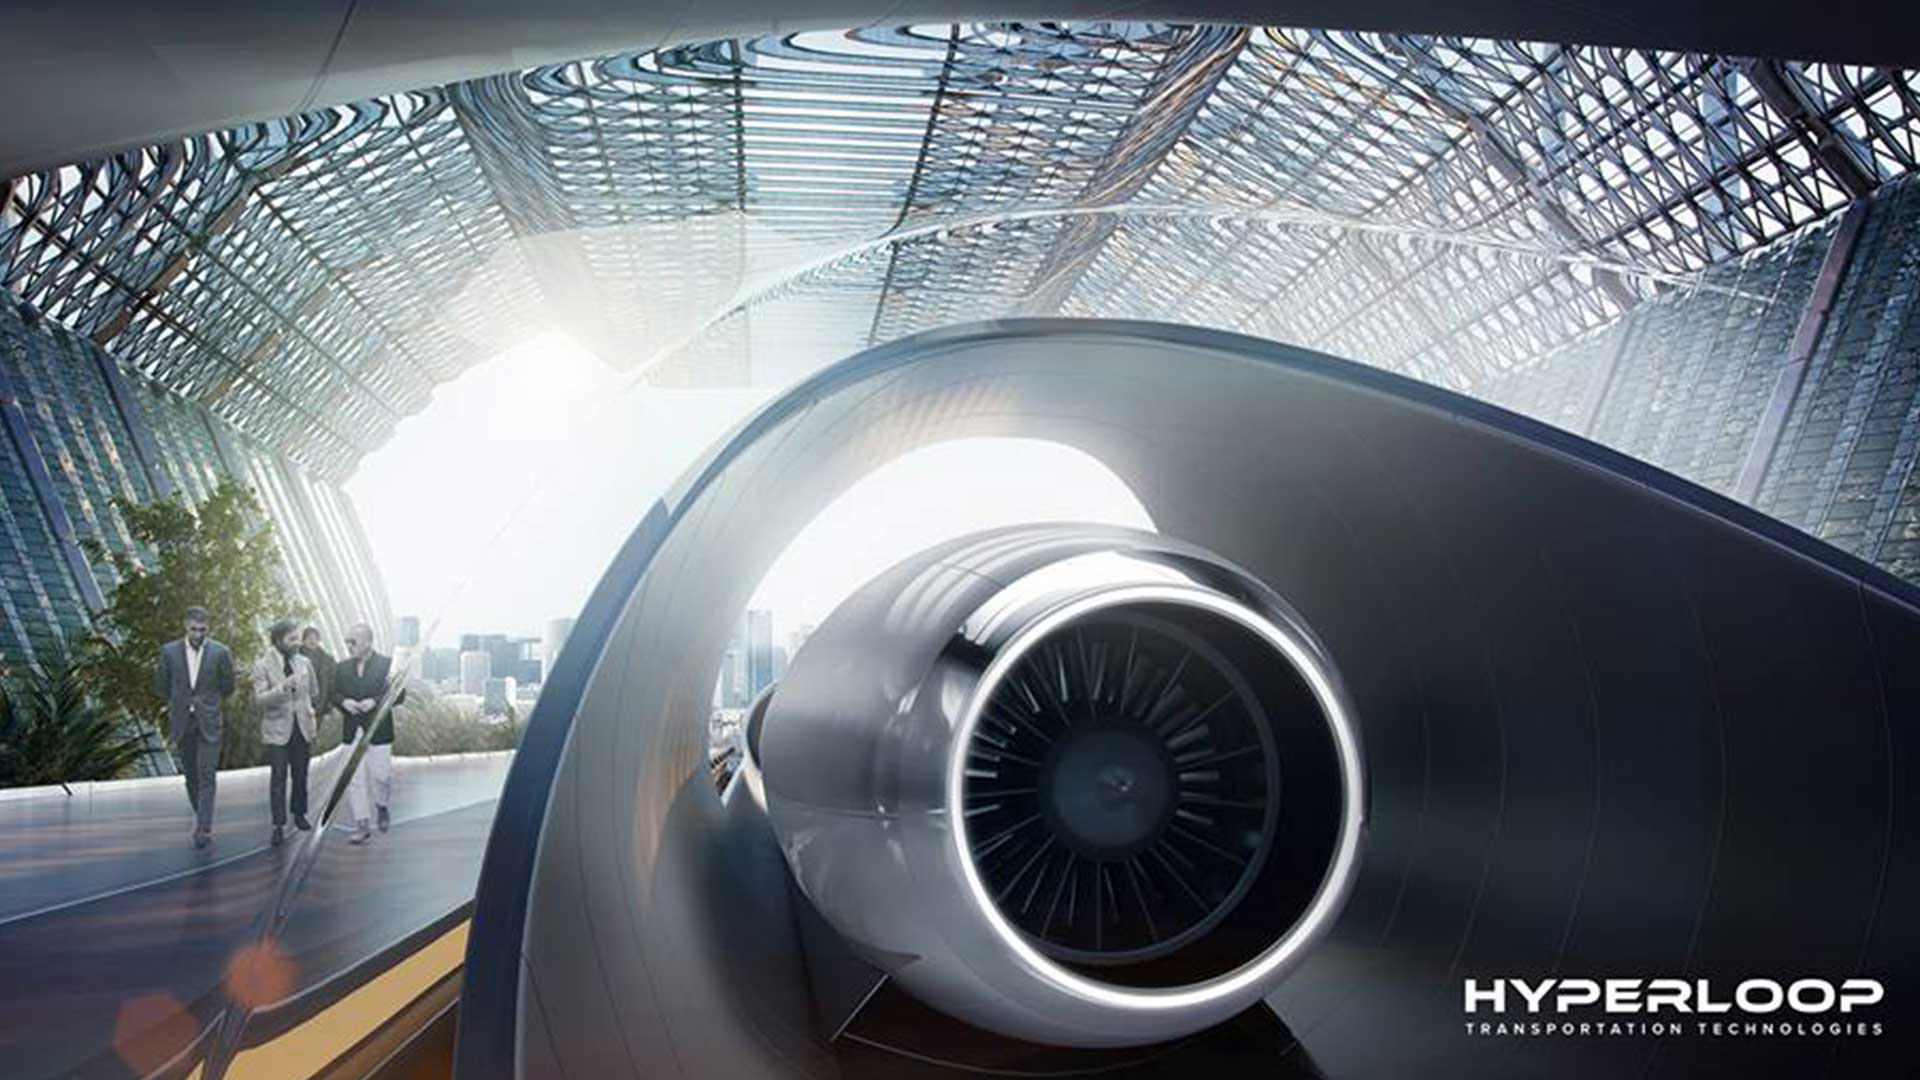 Hyperloop in India @PeakLife